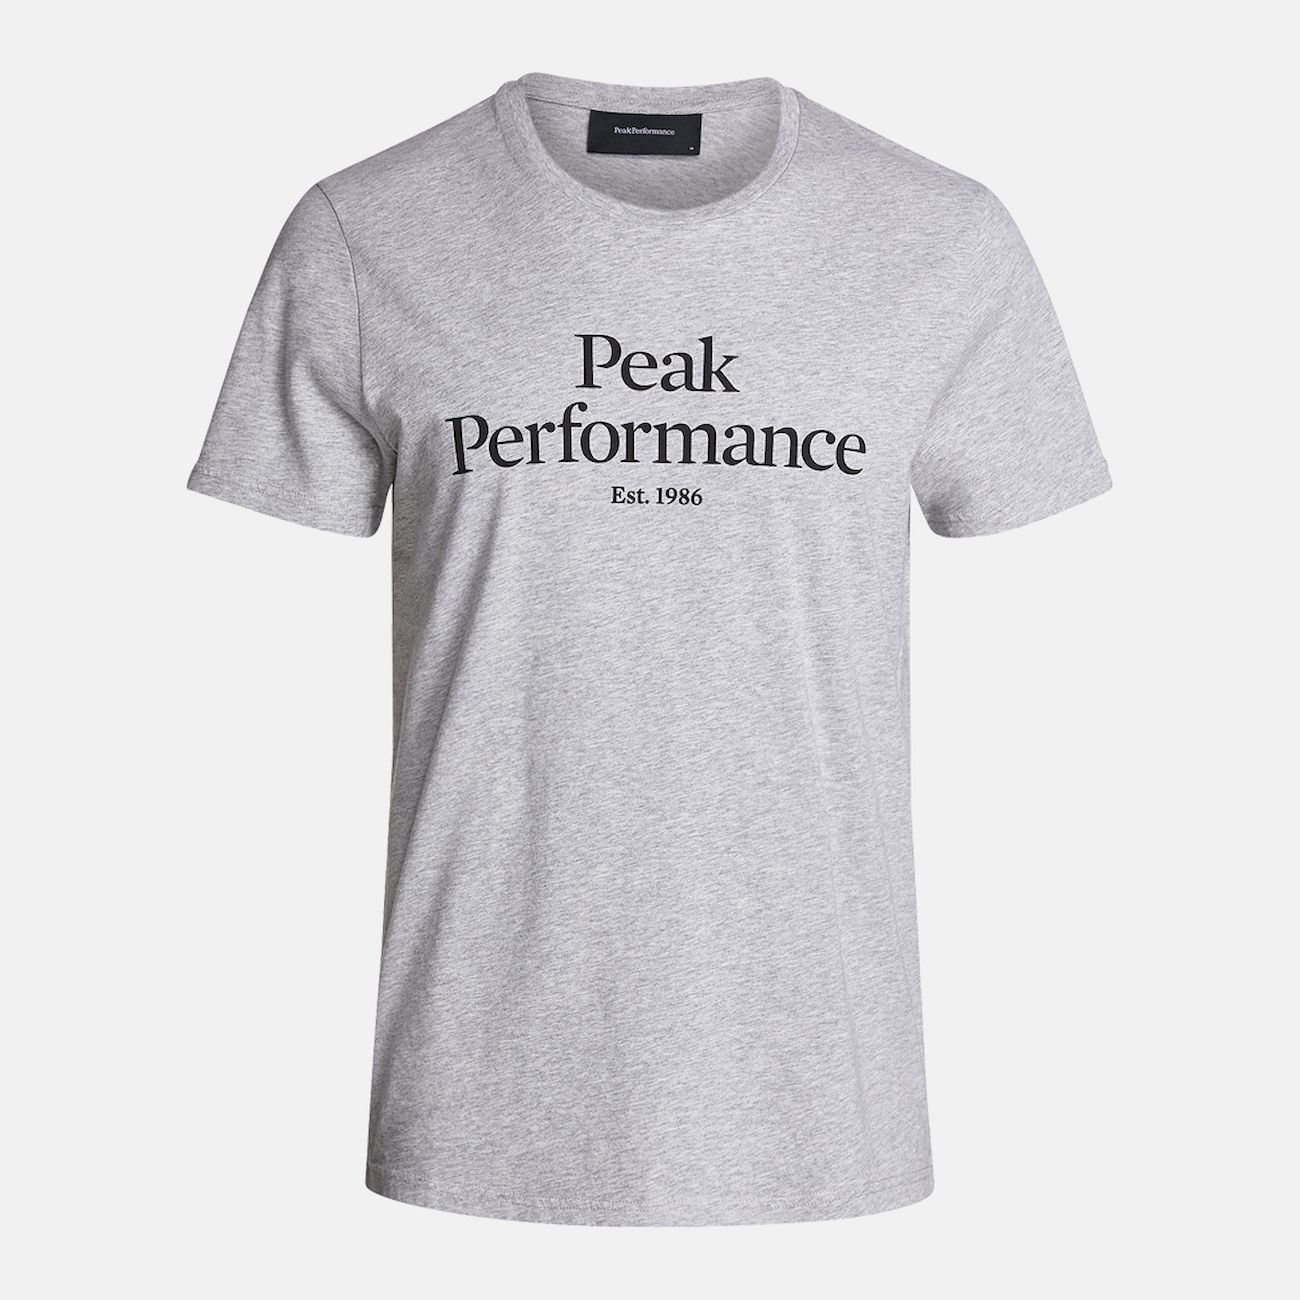 Peak Performance Original Tee - T-shirt - Men's